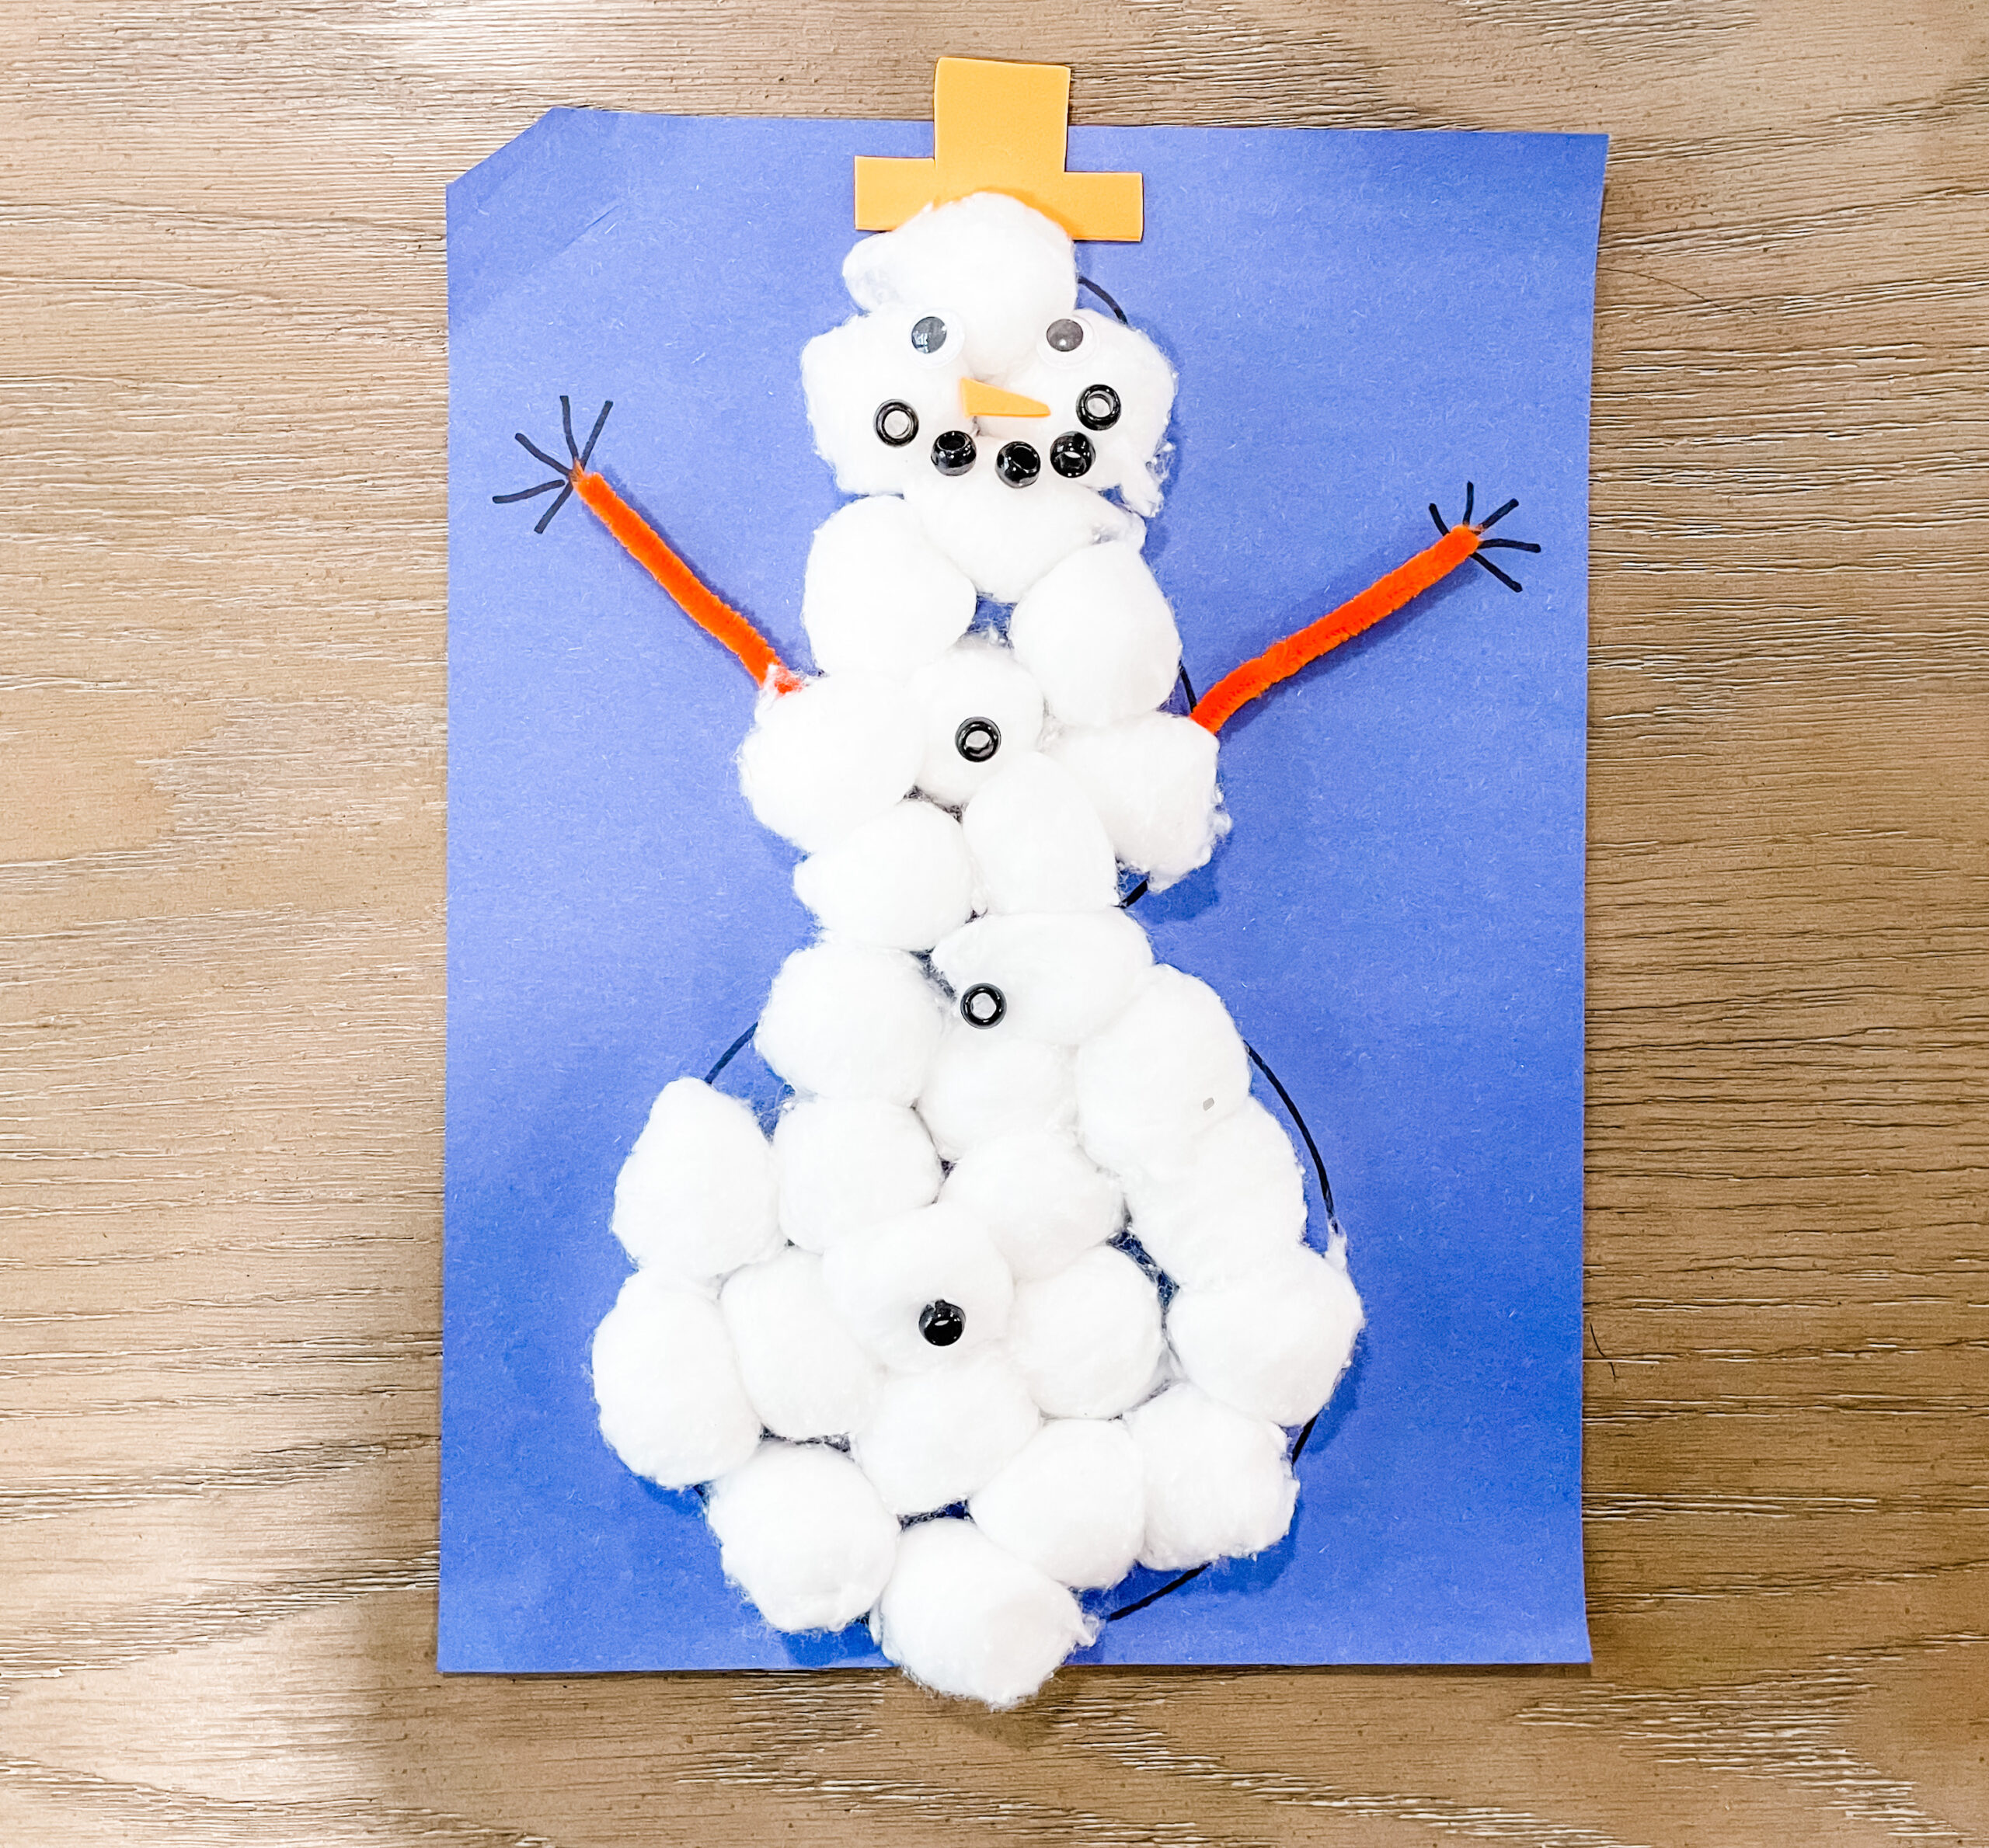 Preschool Cotton Ball Snowman Craft: A Fun Winter Craft - Teaching